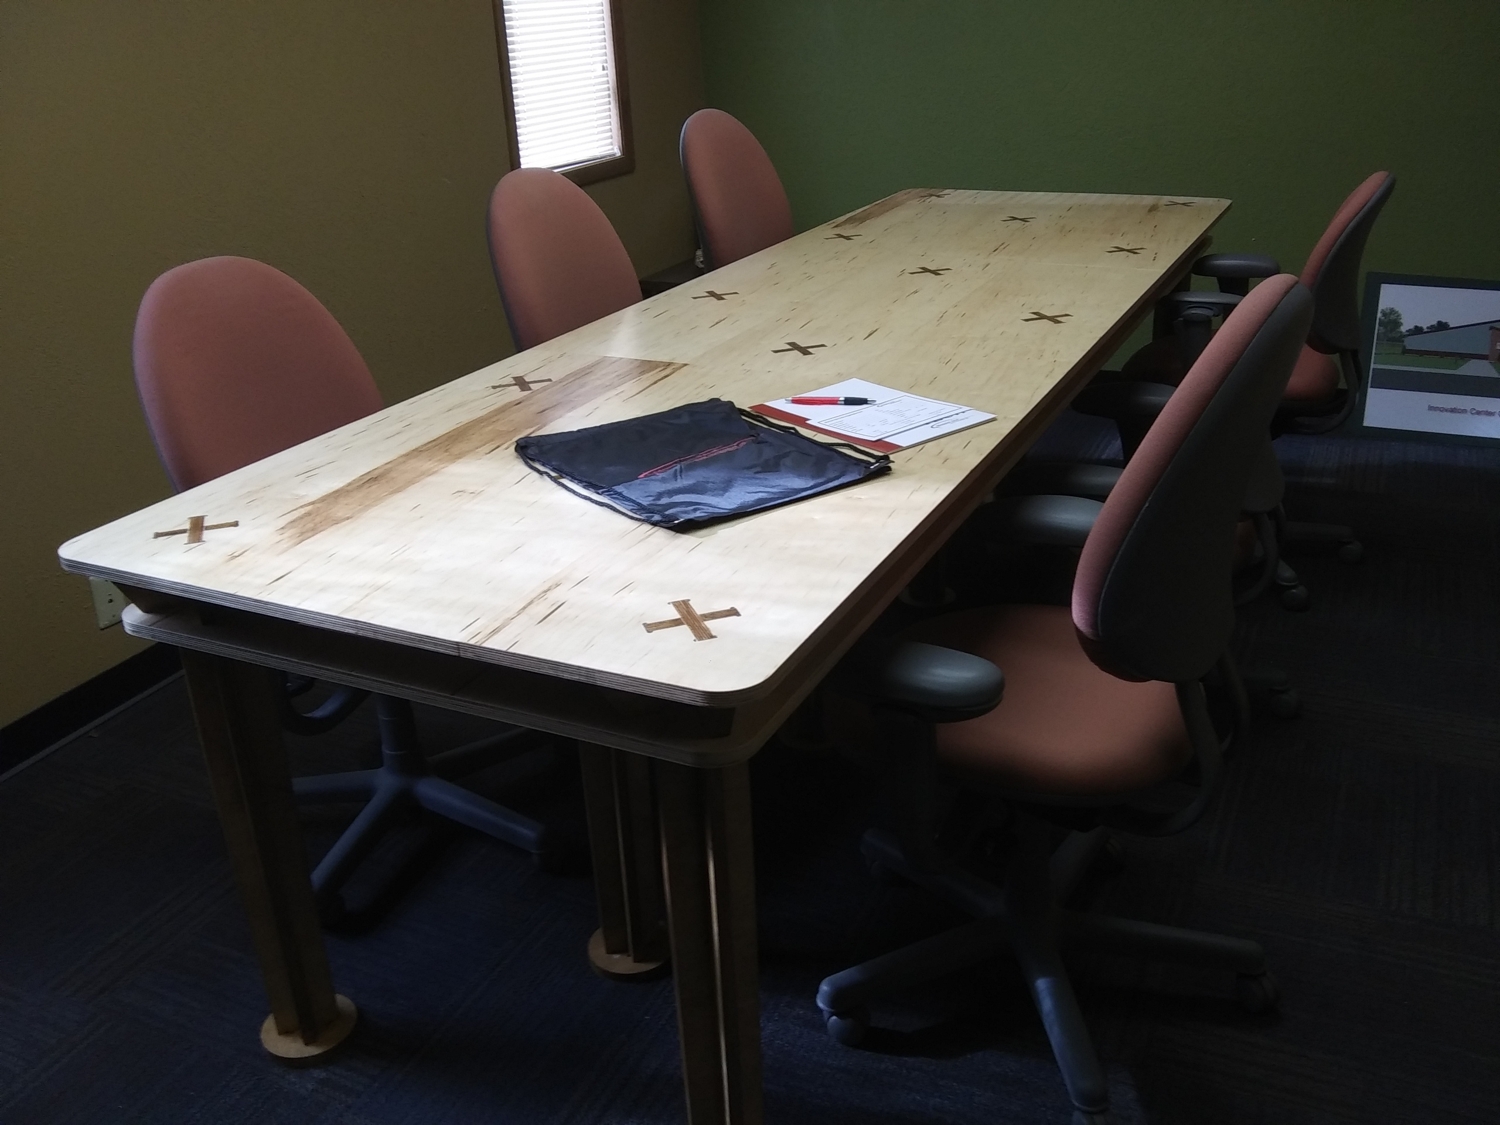 طاولة غرفة اجتماعات مقطوعة بالليزر 10x4ft